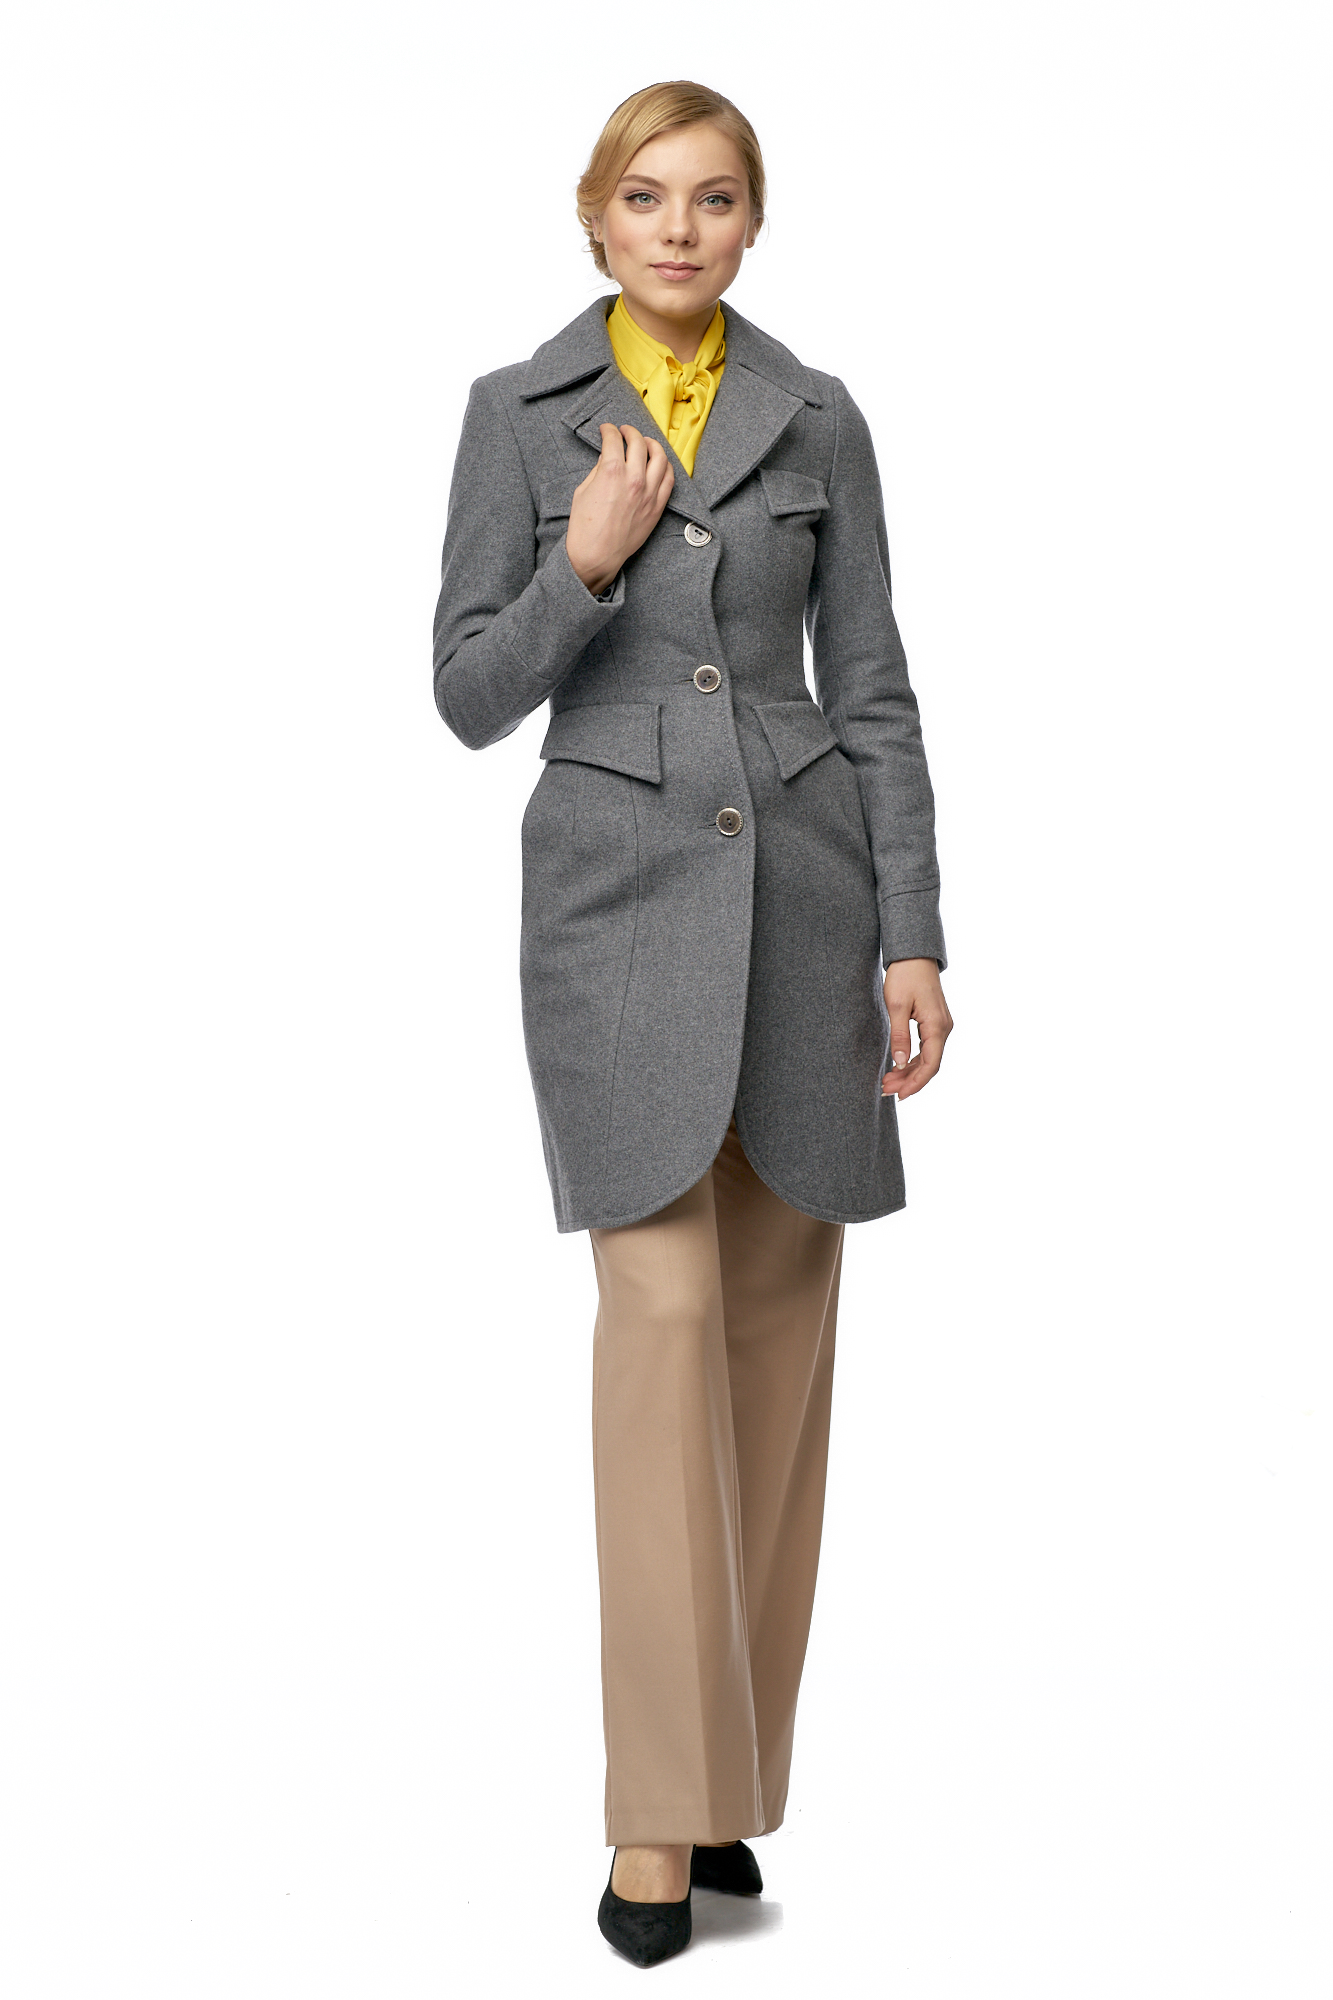 Женское пальто из текстиля с воротником 8003049-2